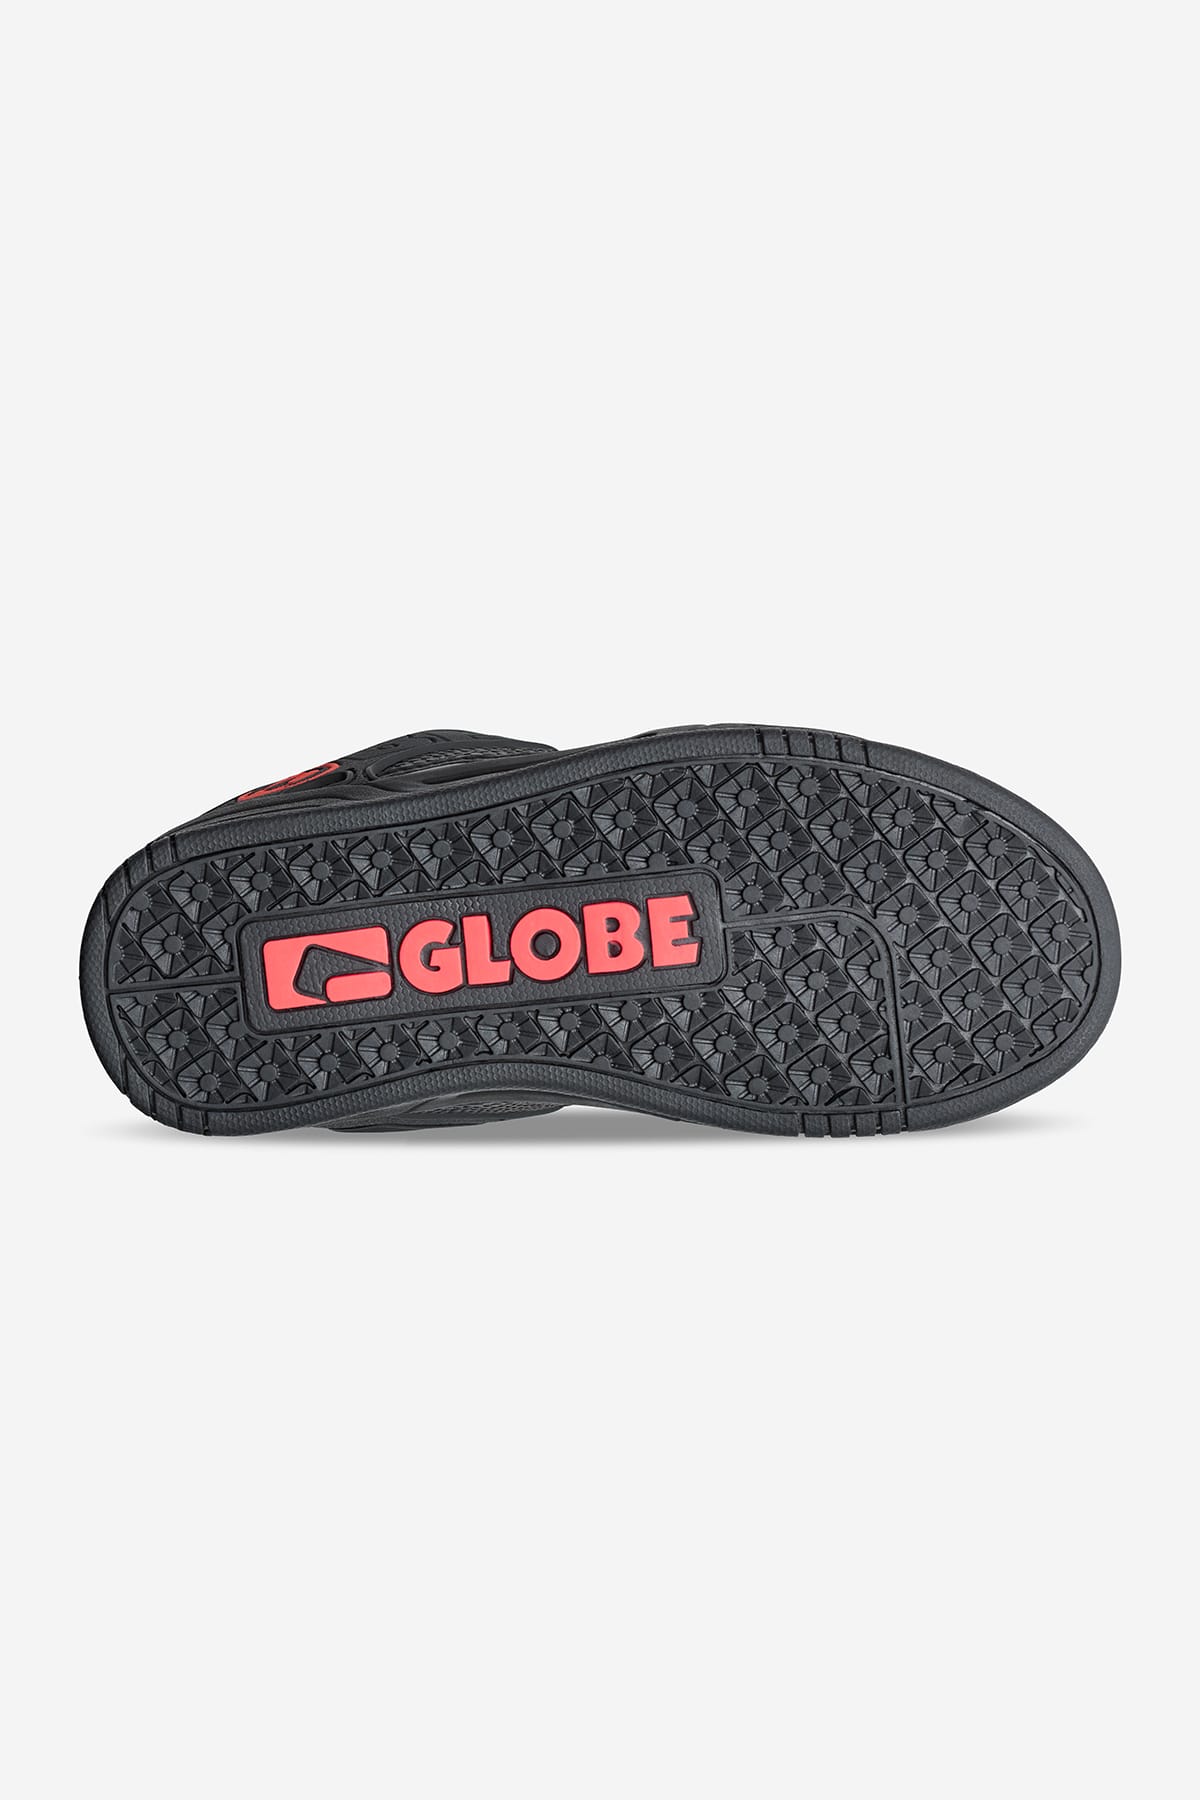 Globe - Tilt Bambini - Nero/Snake - skateboard Scarpe